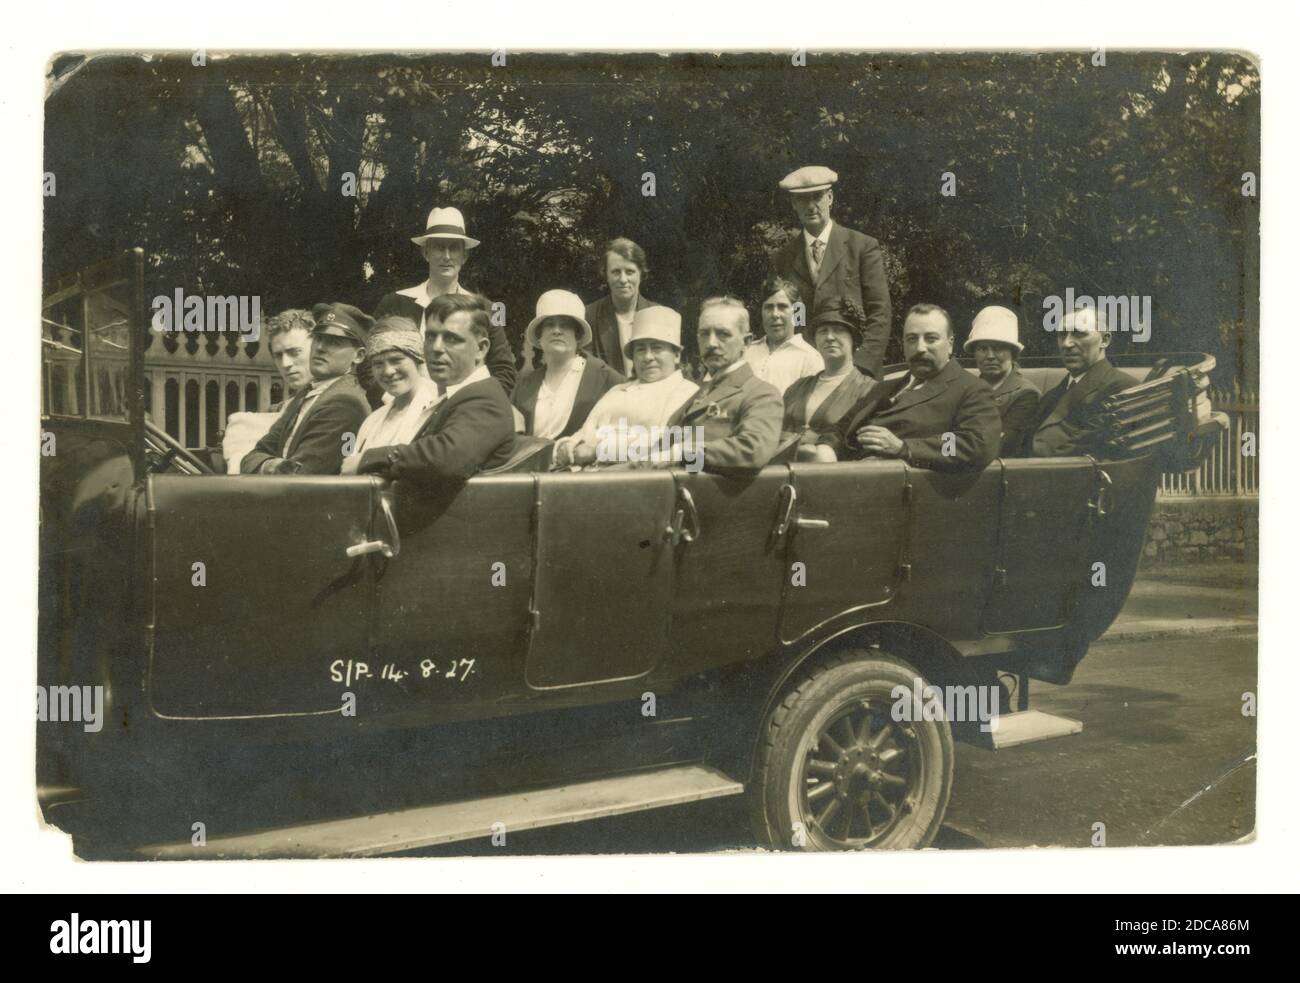 Originalpostkarte aus den 1920er Jahren eines Charabanc-Ausflugs, komplett mit Chauffeur mit Mütze. Die Frauen tragen Cloche Hüte modisch zu der Zeit, datiert 14 Aug 1927 auf der Vorderseite. Albert Smith Ltd., Jersey, Großbritannien Stockfoto